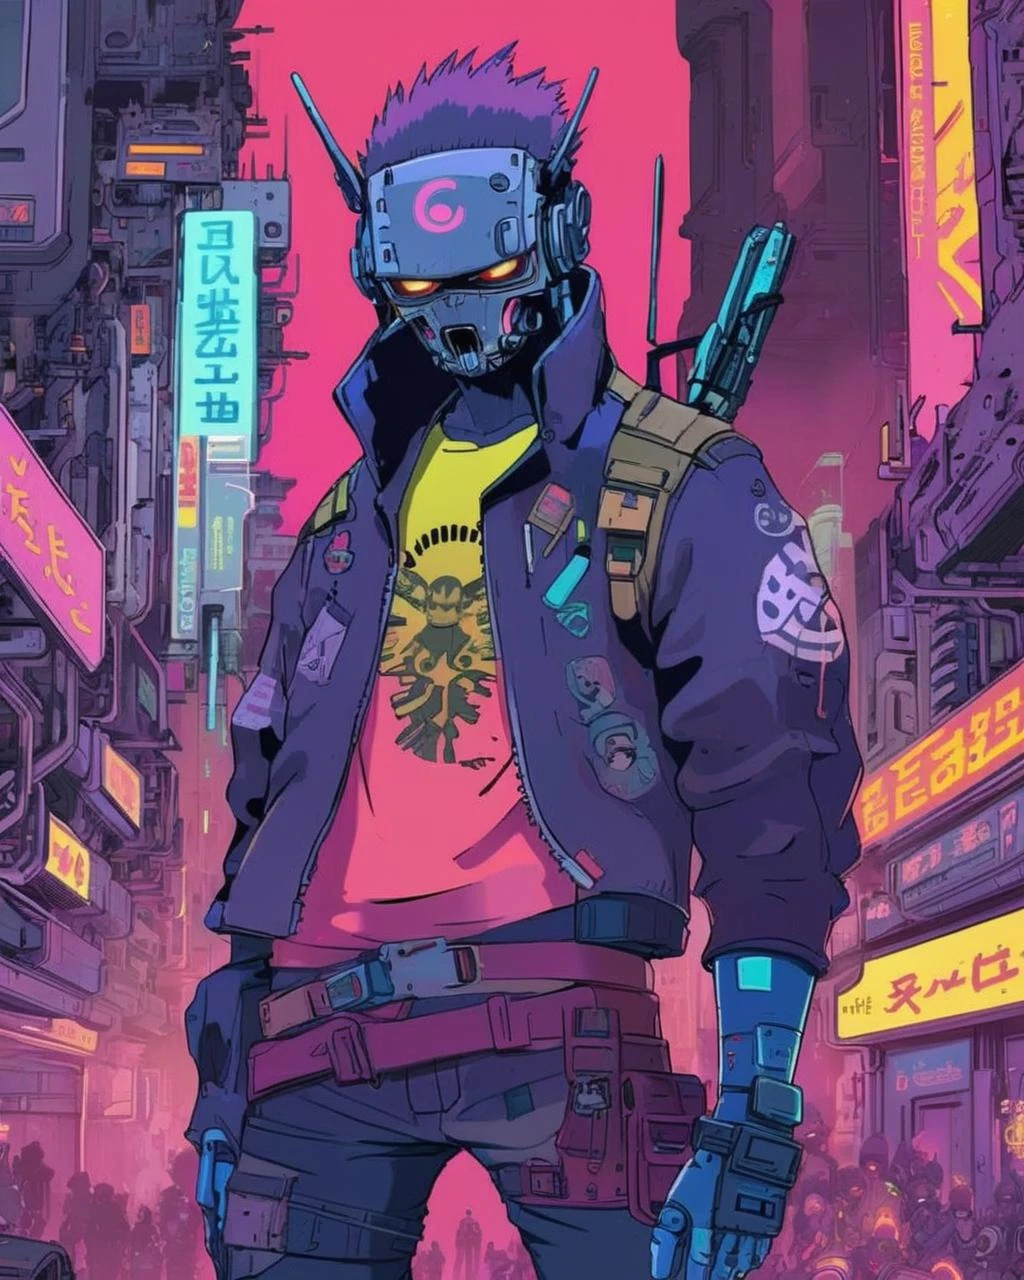 일본 만화 영화, 최후의 입장, 반란군과 사이버로 강화된 영웅들이 디지털 괴물의 맹공격에 맞서 집결합니다., 네온과 분노의 불꽃 속에서 분출되는 세계의 충돌.,  사이버펑크, 사이버펑크 art, 복고풍 미래주의